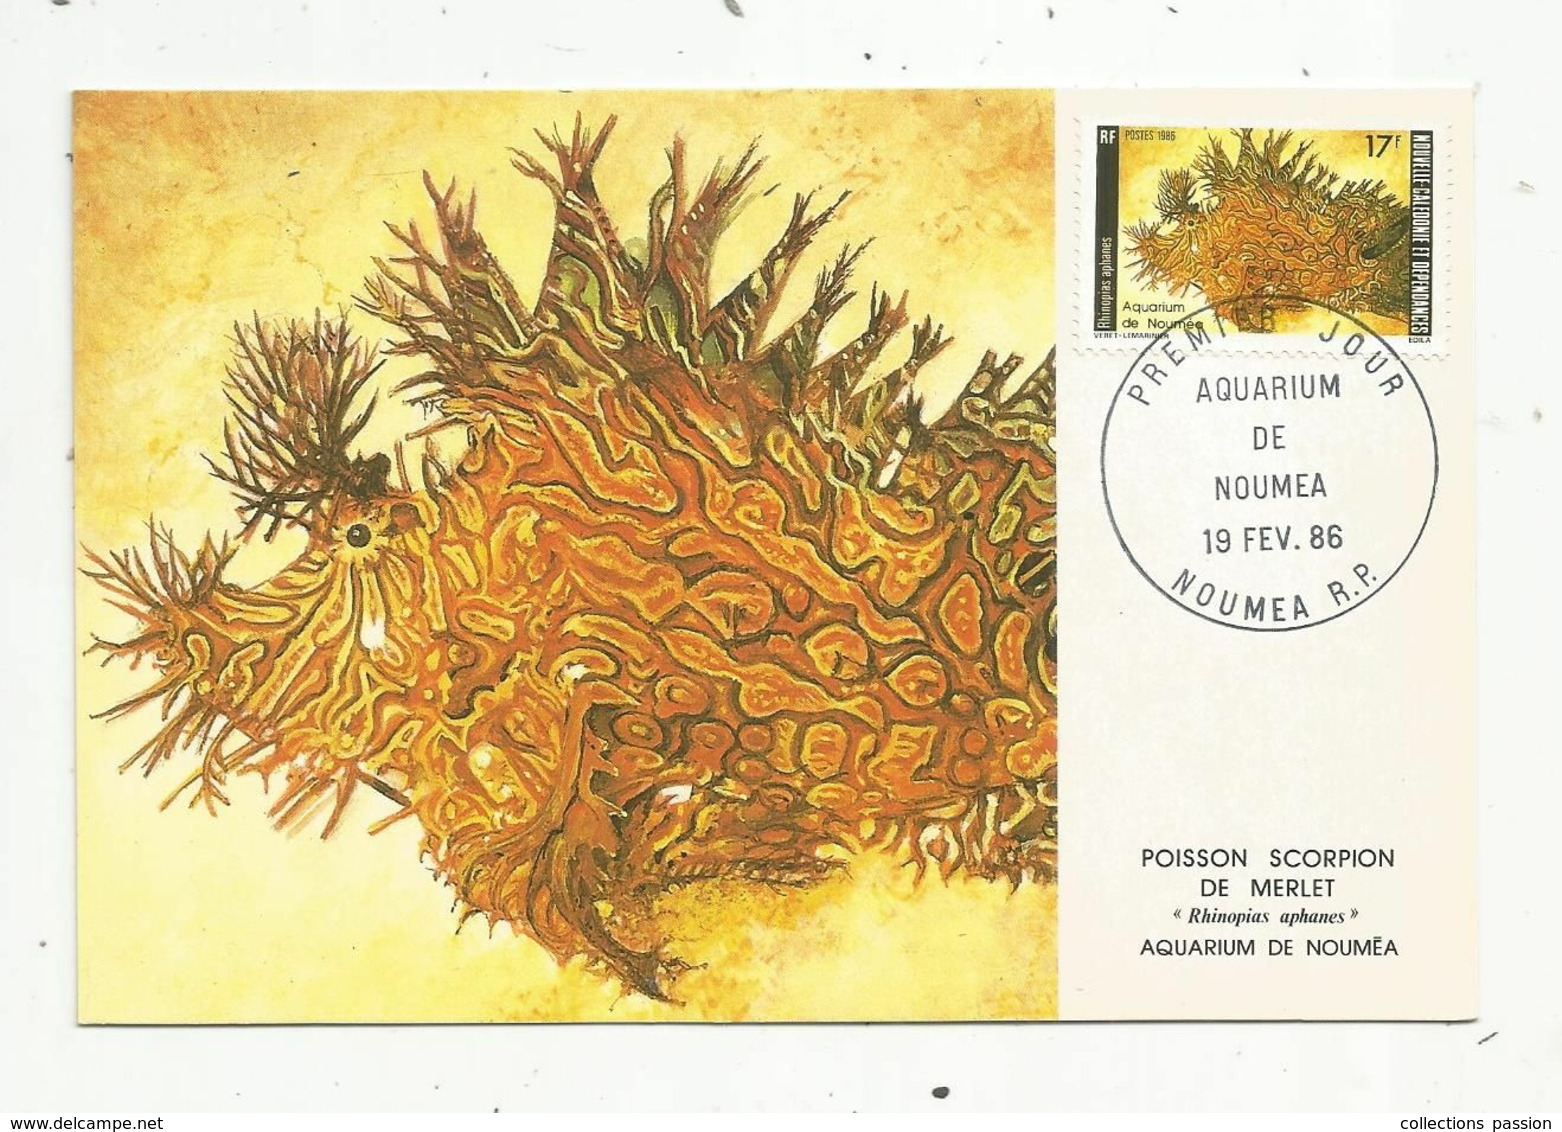 Carte Maximum , Premier Jour , NOUVELLE CALEDONIE ,aquarium De NOUMEA ,NOUMEA R.P. ,poisson Scorpion De Merlet - Covers & Documents